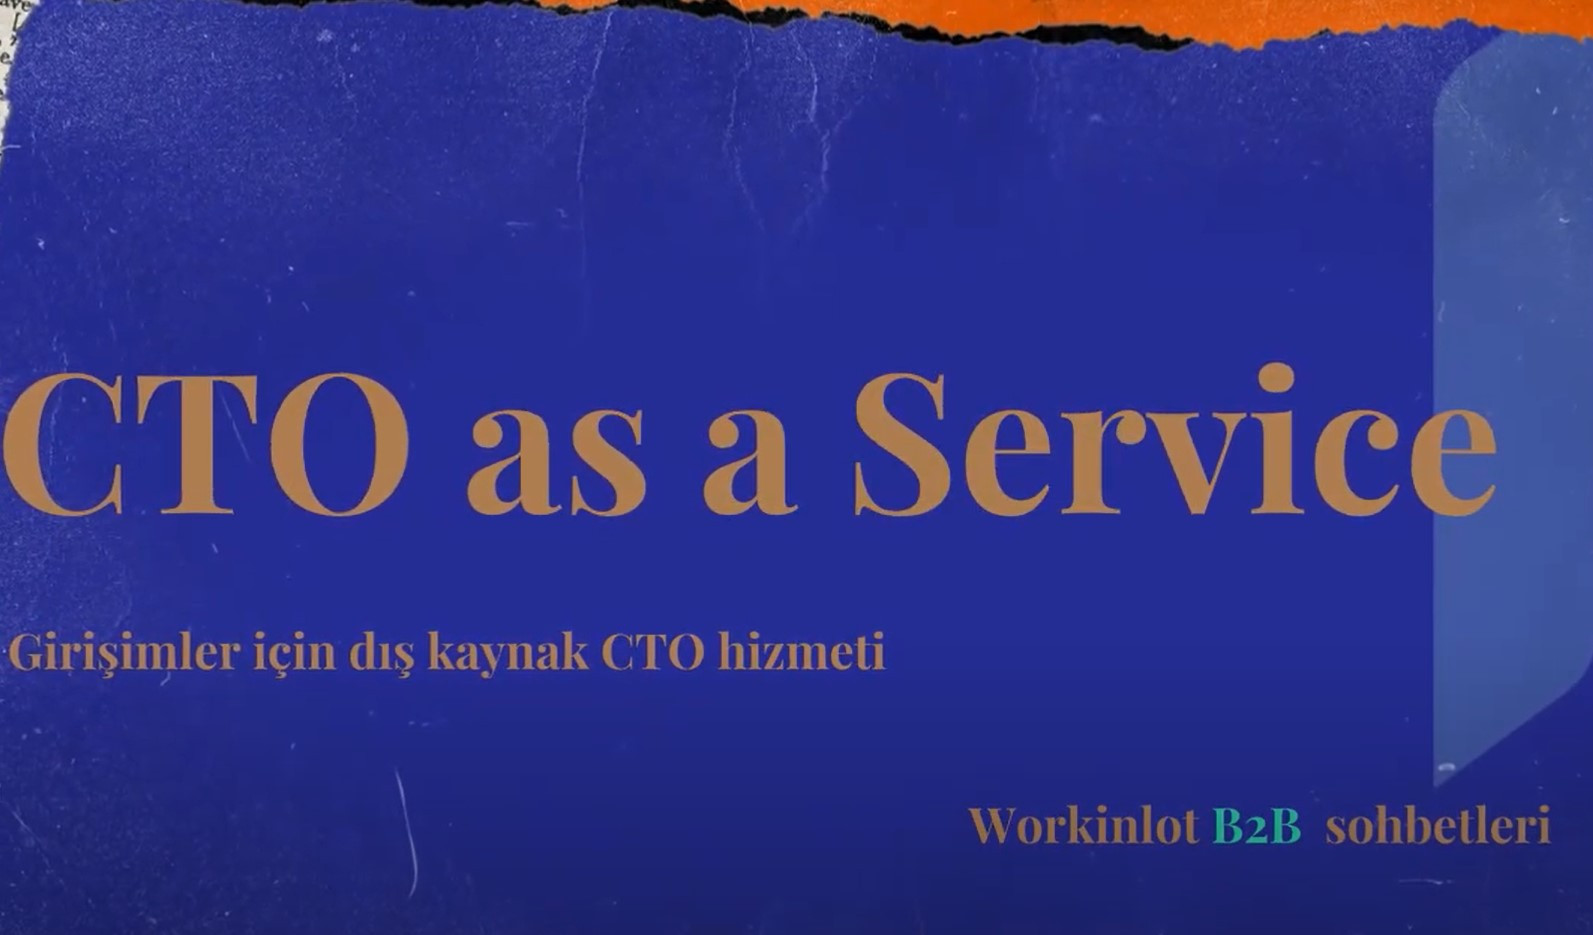 Workinlot B2B sohbetleri - CTO as a service -Girişimler için dış kaynak CTO hizmeti